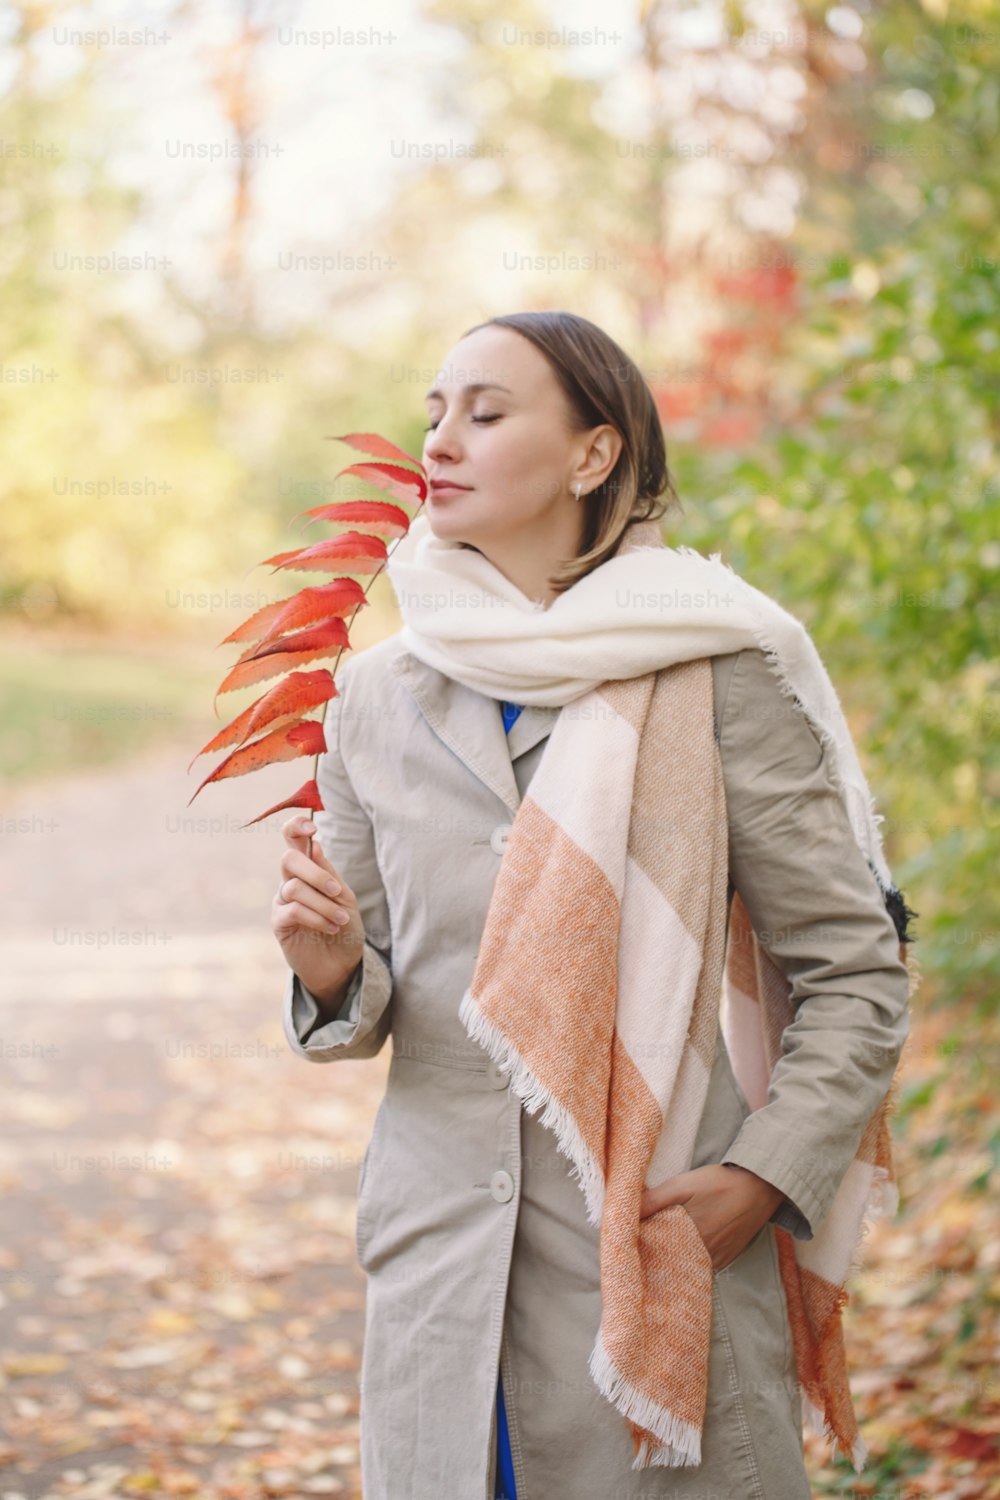 Bela mulher caucasiana de meia-idade com cabelo curto no parque ao ar livre. Mulher nova com roupas casuais segurando o galho da árvore de outono do outono com folhas vermelhas andando do lado de fora.